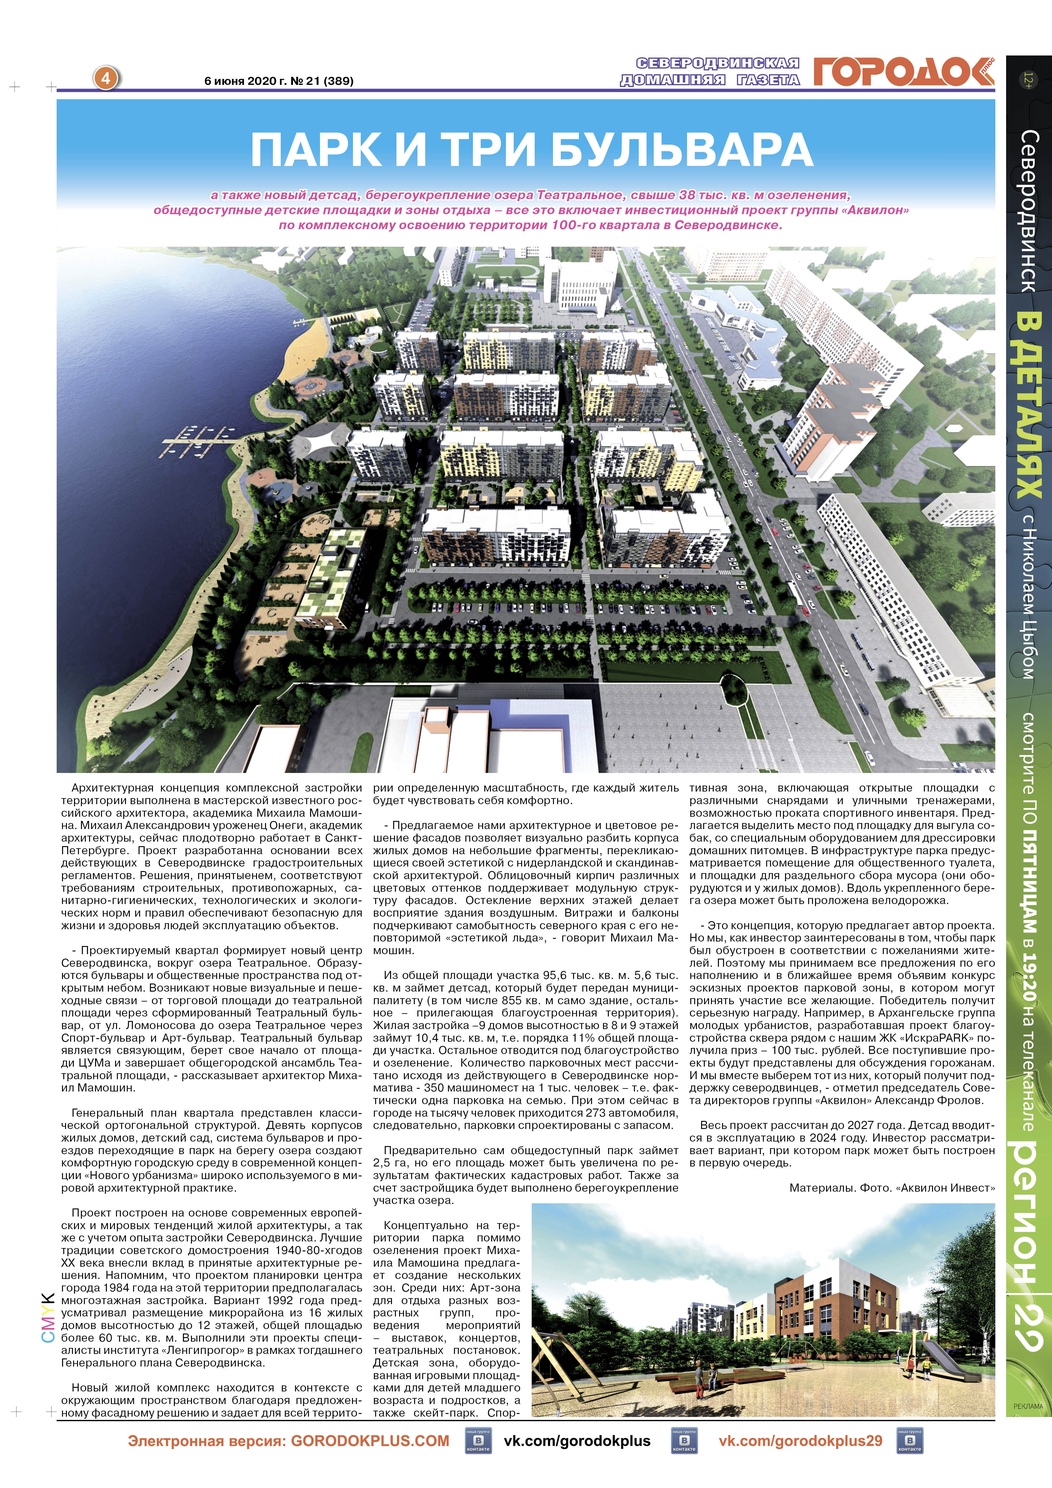 Городок плюс, выпуск номер 21 от 06 июня 2020 года, страница 4.